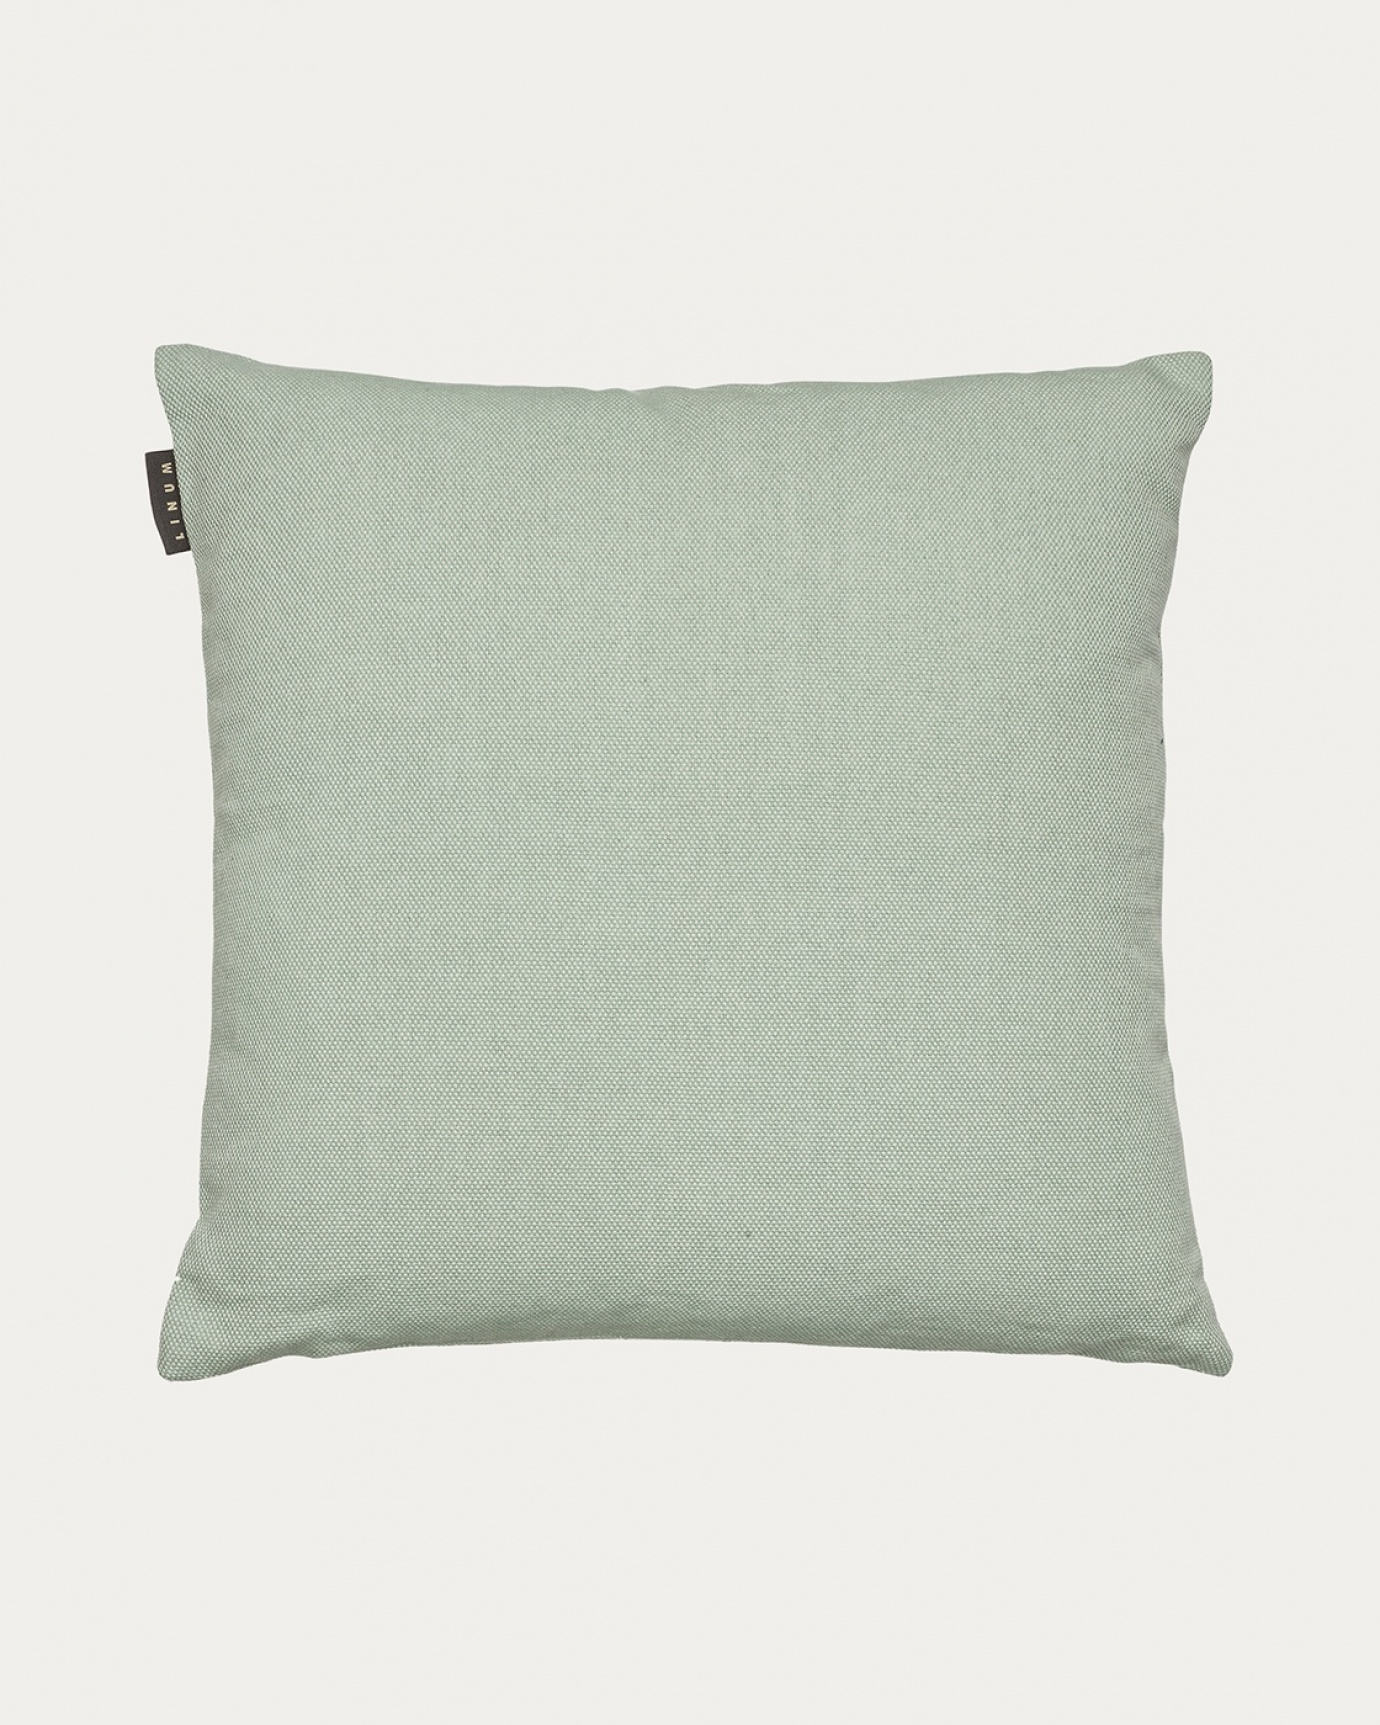 Produktbild helles eisgrün PEPPER Kissenhülle aus weicher Baumwolle von LINUM DESIGN. Einfach zu waschen und langlebig für Generationen. Größe 50x50 cm.